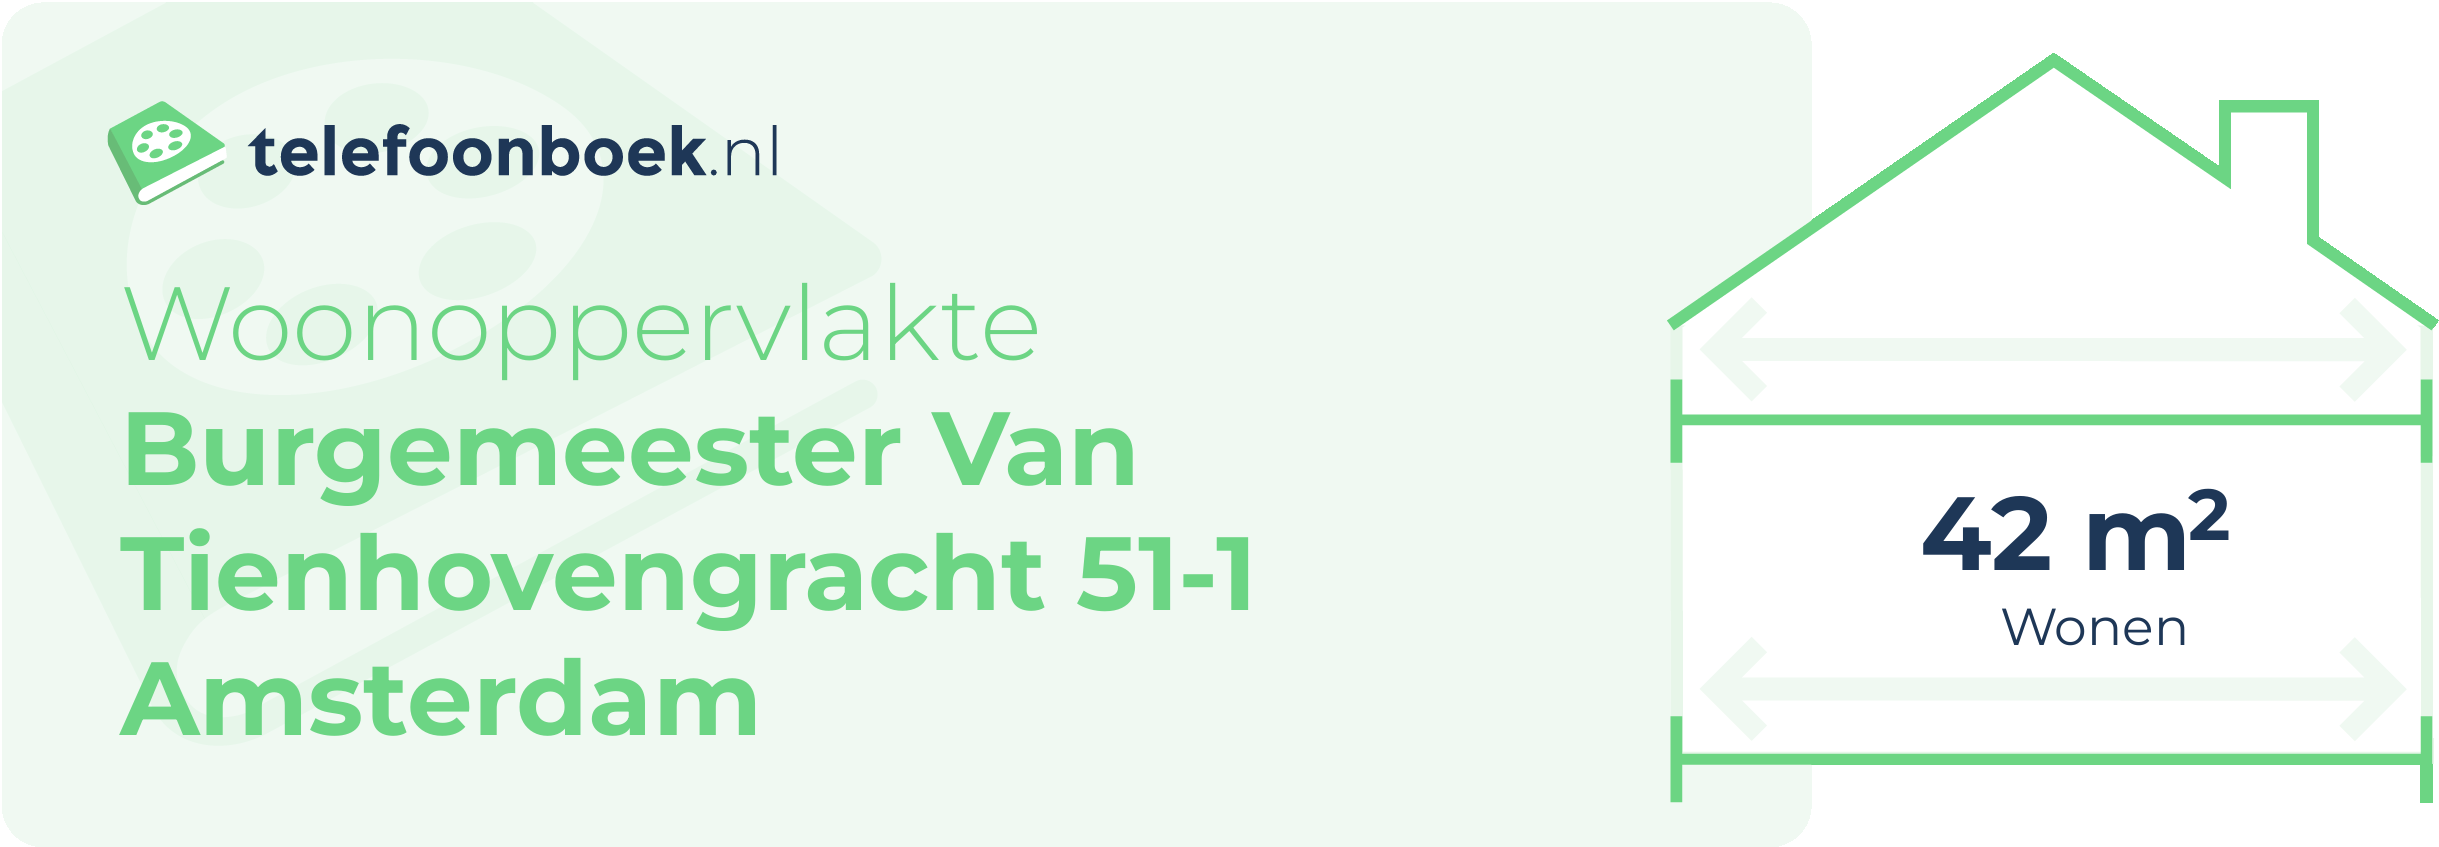 Woonoppervlakte Burgemeester Van Tienhovengracht 51-1 Amsterdam